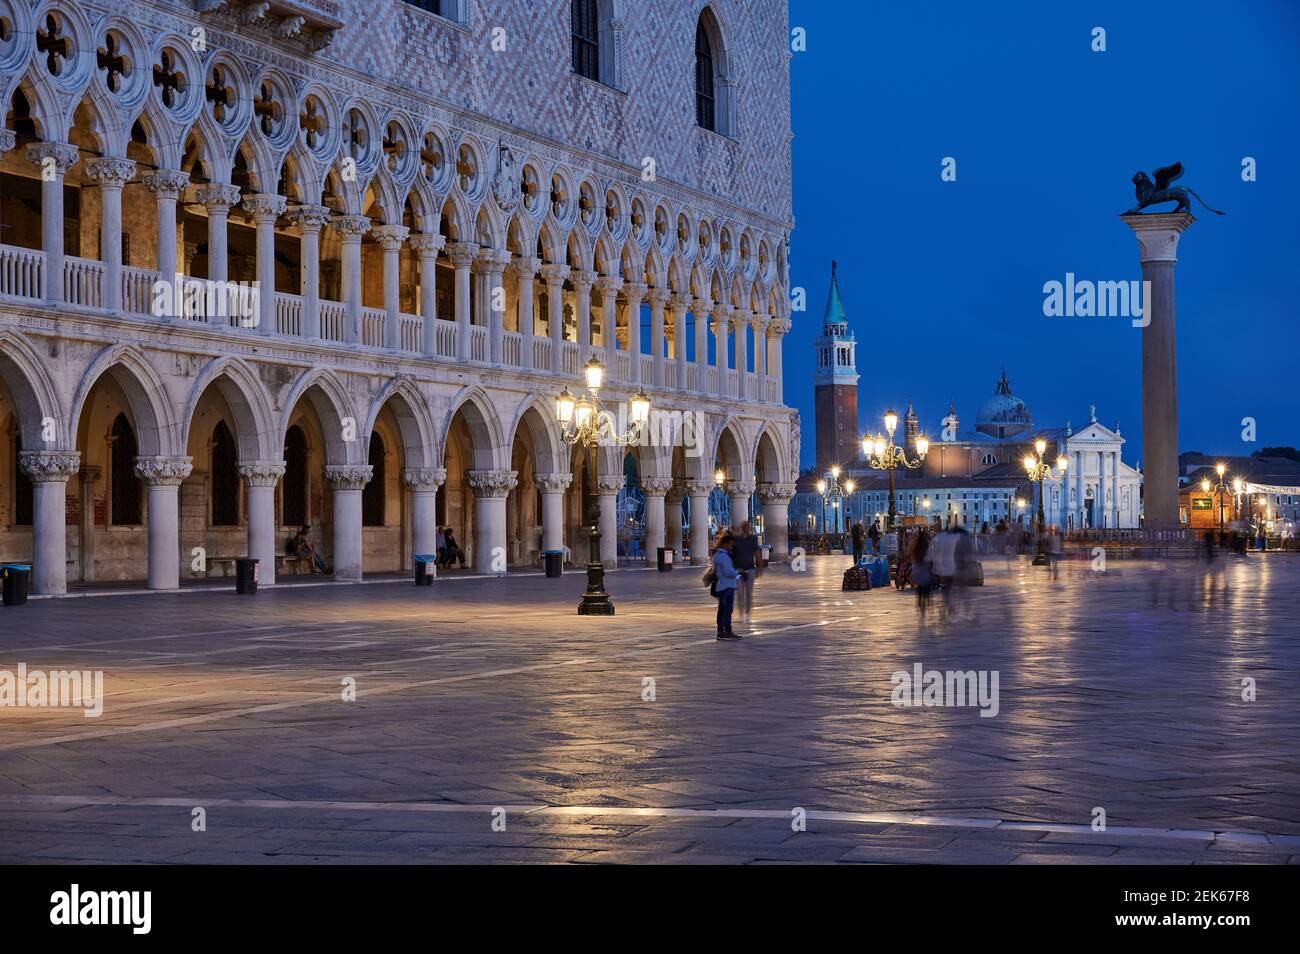 Photo au crépuscule du Palais des Doges illuminé (Palazzo Ducale) et de la Piazzetta San Marco, Venise, Vénétie, Italie Banque D'Images